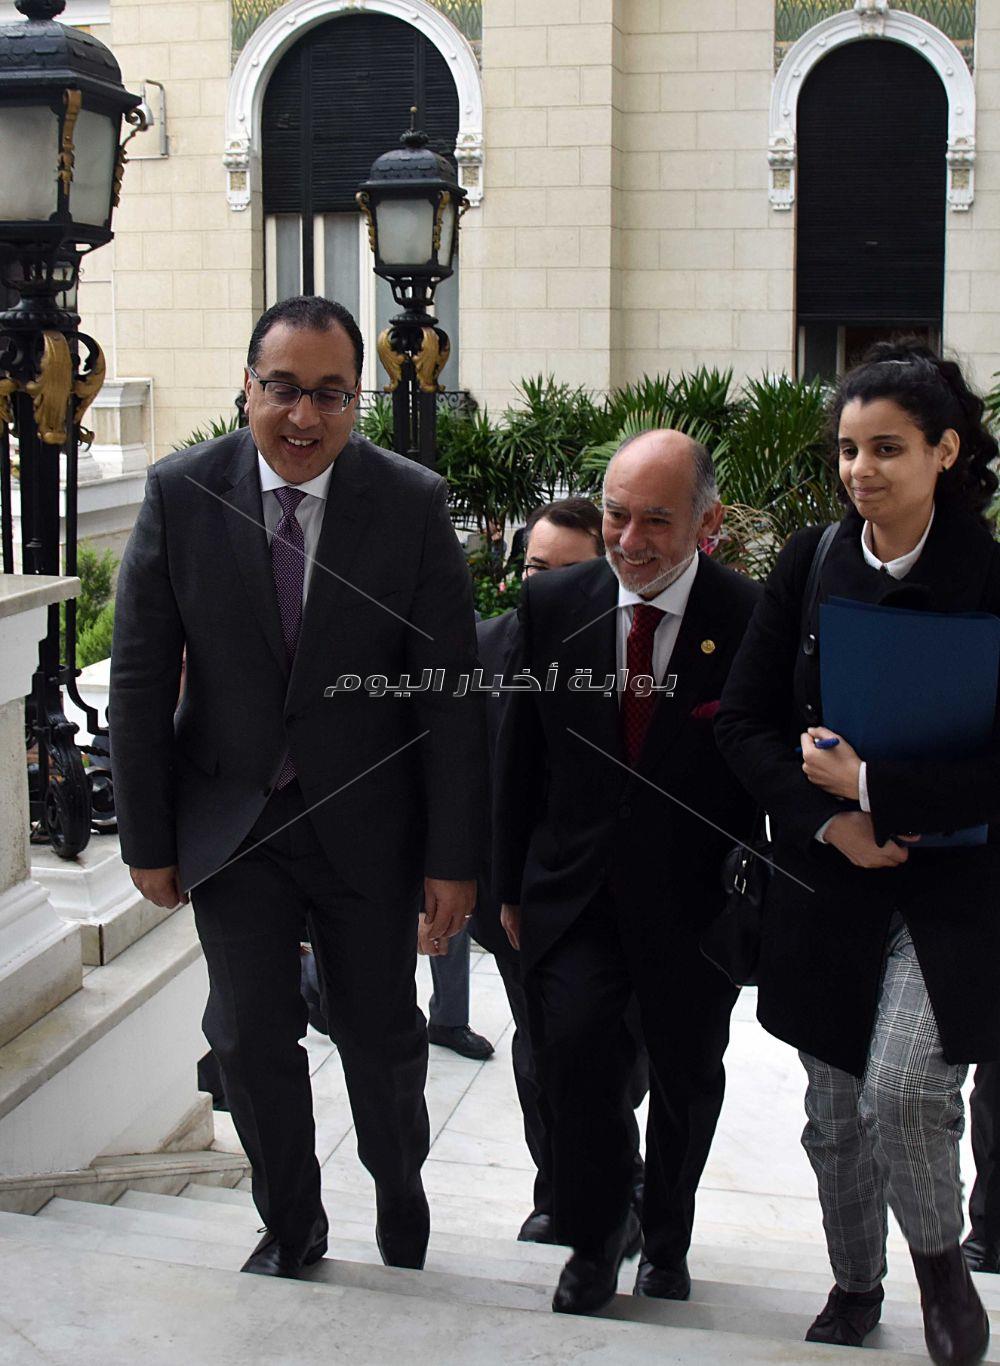 رئيس الوزراء يستقبل رئيس برلمان شيلى _ تصوير:أشرف شحاتة